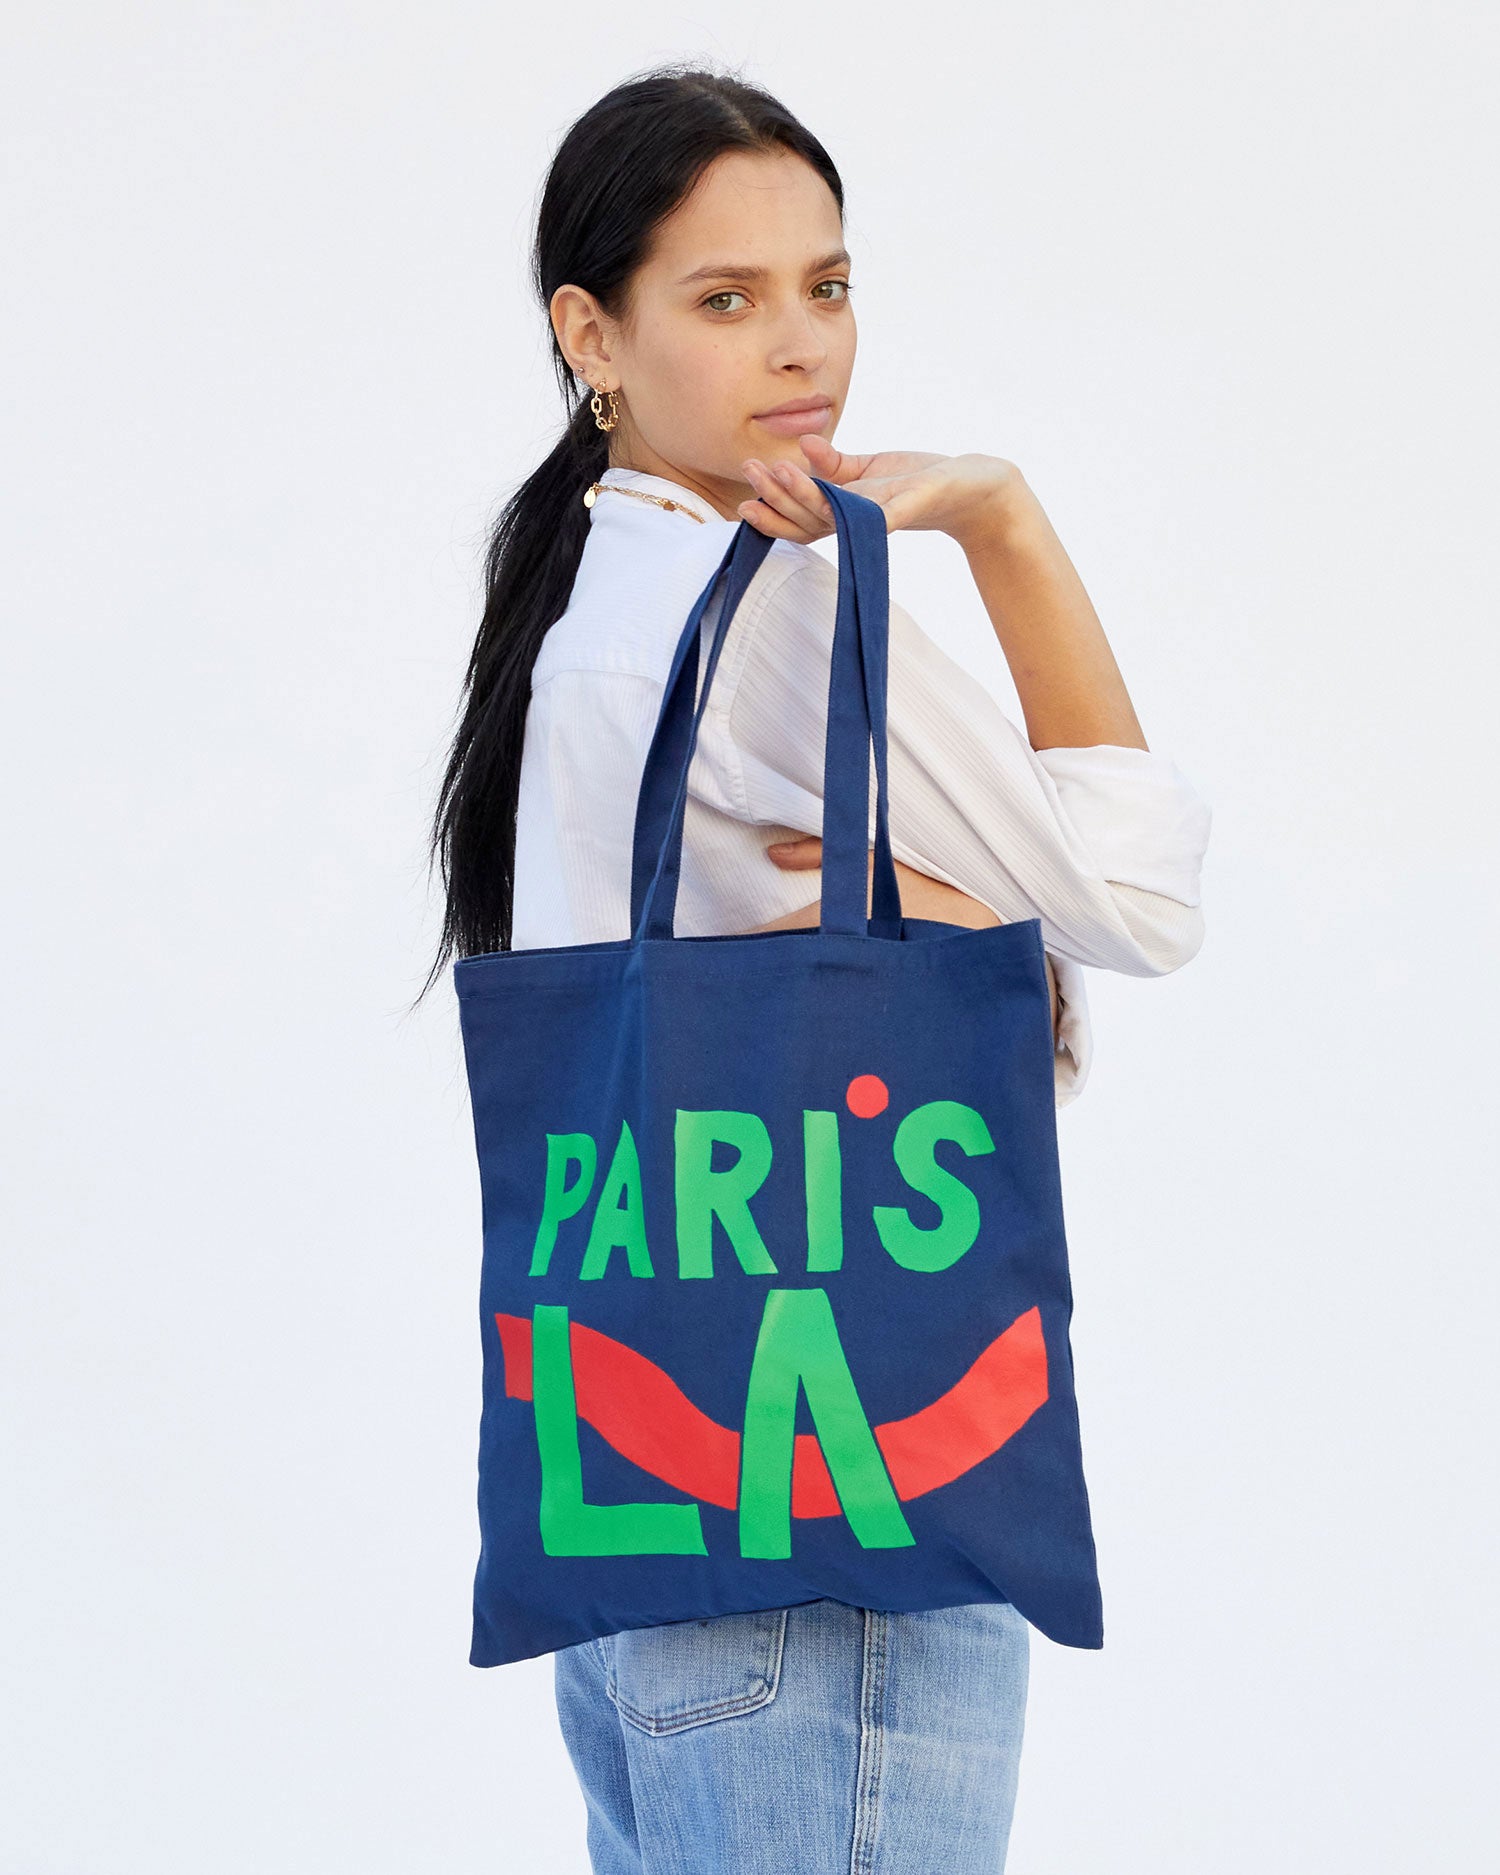 Pin by Uae bags on Handbags  Insta fashion, Goyard bag, Fashion